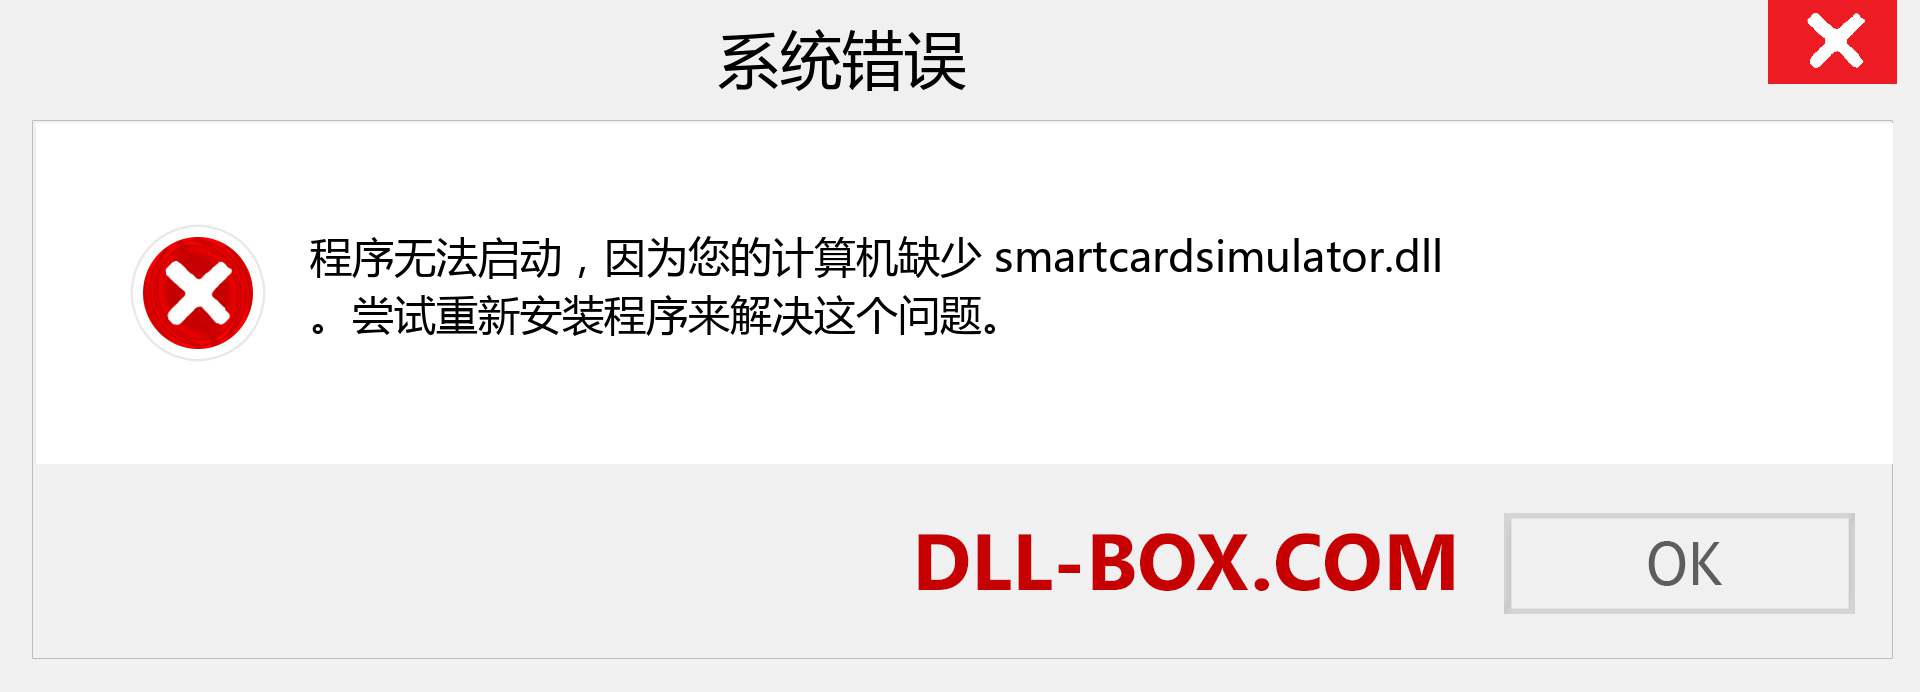 smartcardsimulator.dll 文件丢失？。 适用于 Windows 7、8、10 的下载 - 修复 Windows、照片、图像上的 smartcardsimulator dll 丢失错误